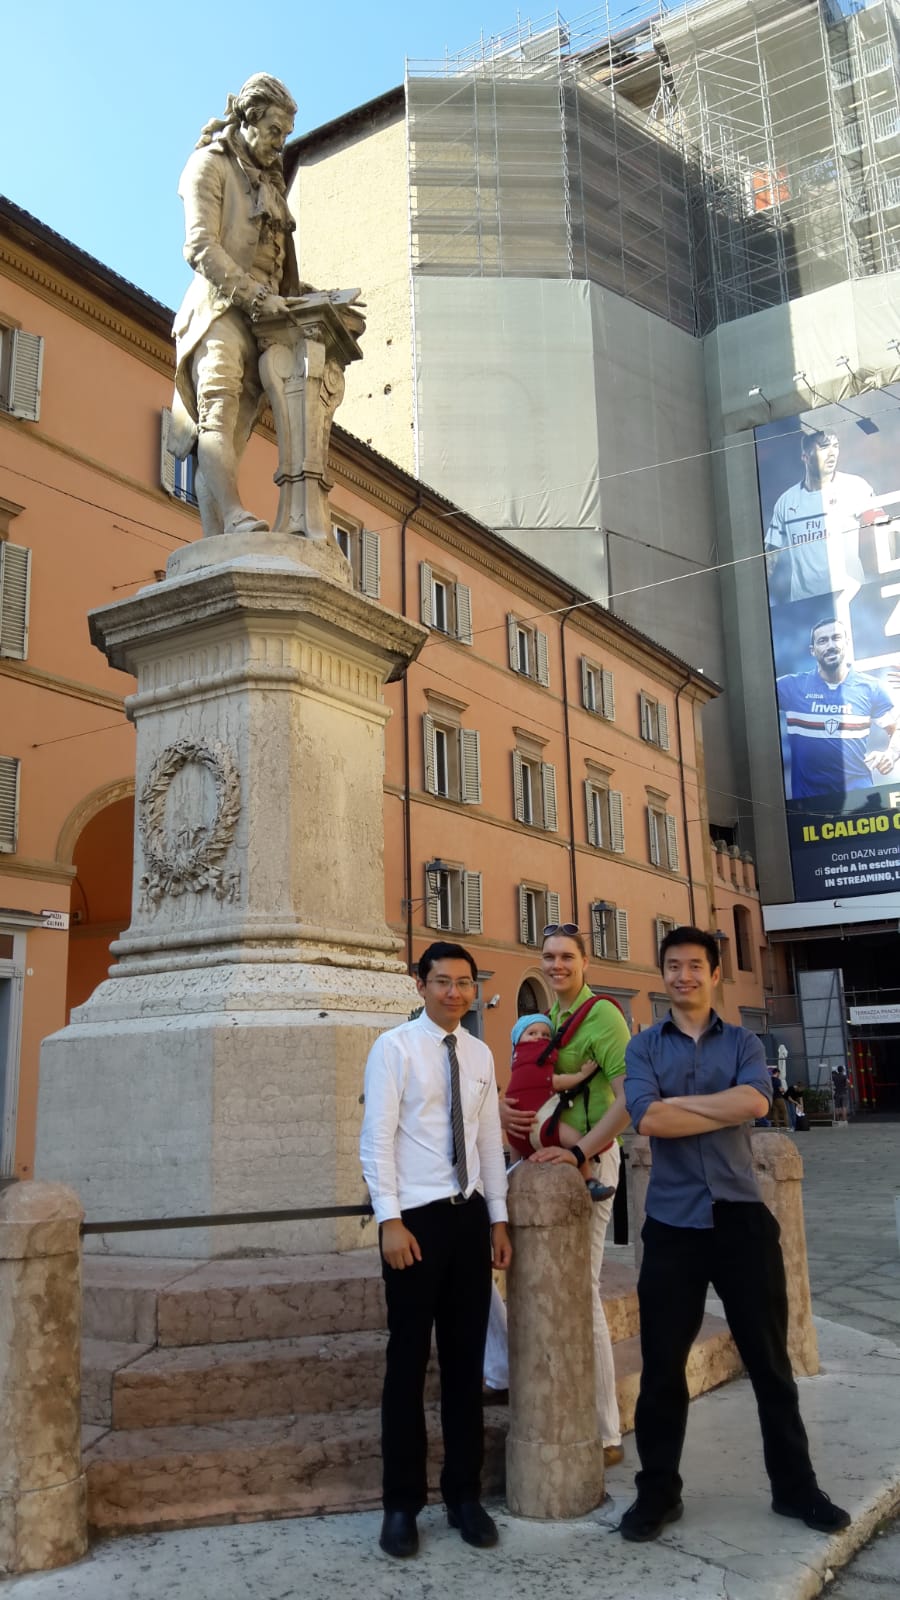 Galvani statue in Bologna